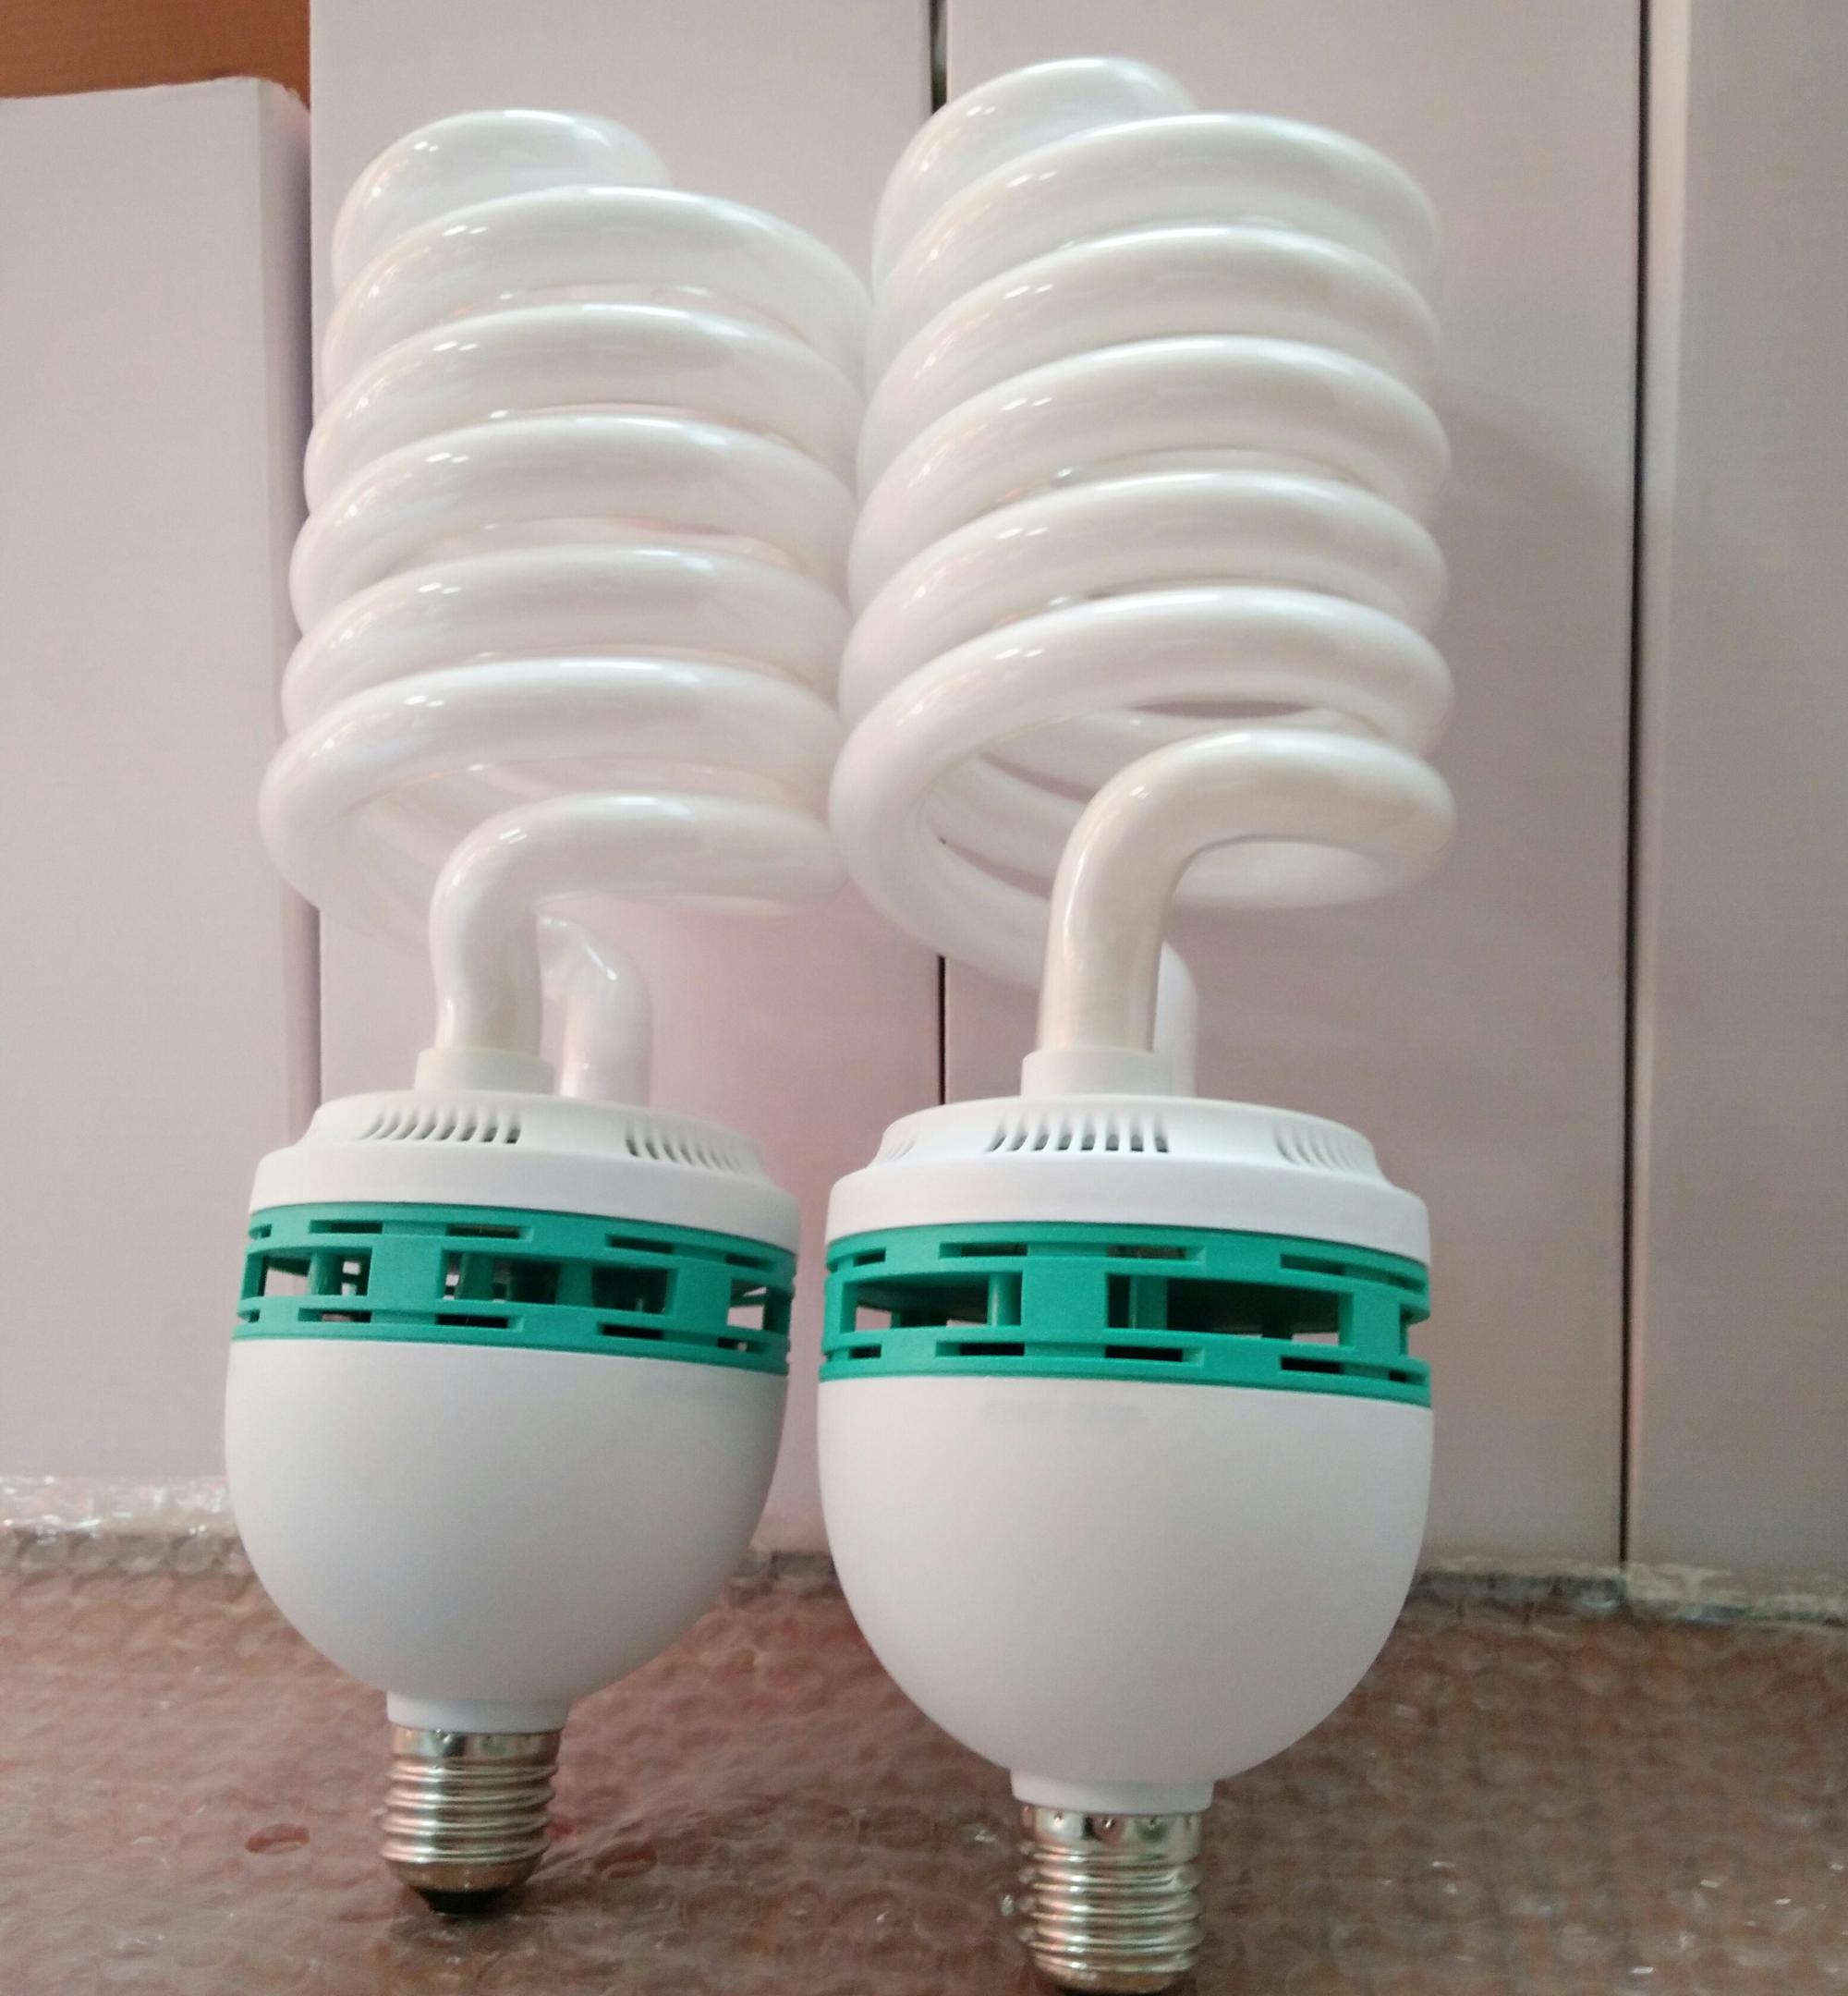 Full Energy saving 110V-130V Spiral CFL Light Bulb